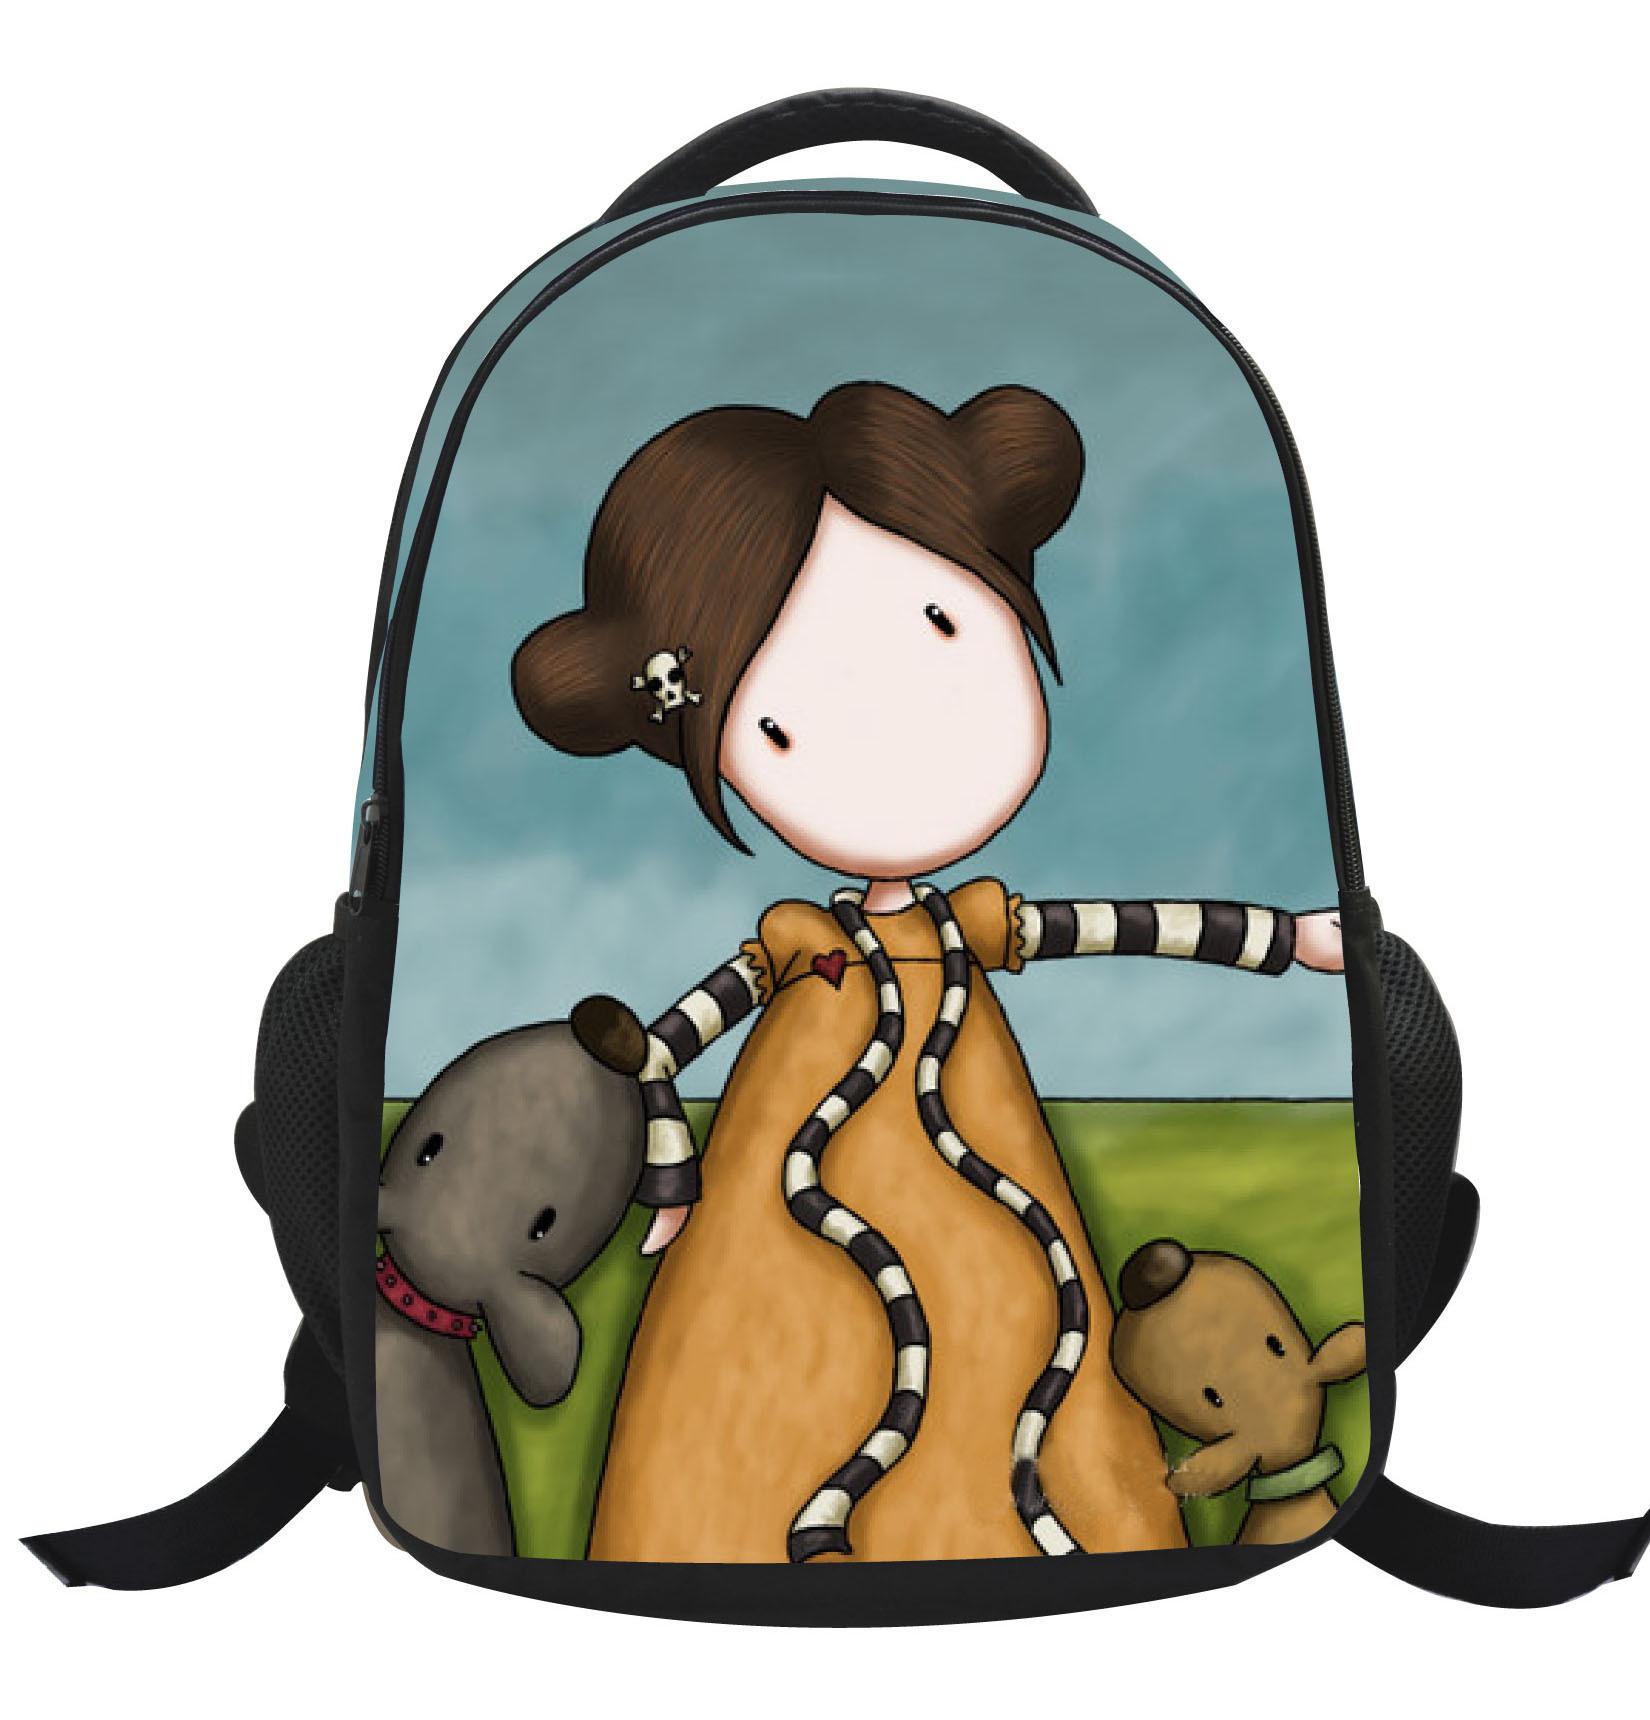 Bookbag clipart student backpack. Lovely girls pattern cartoon